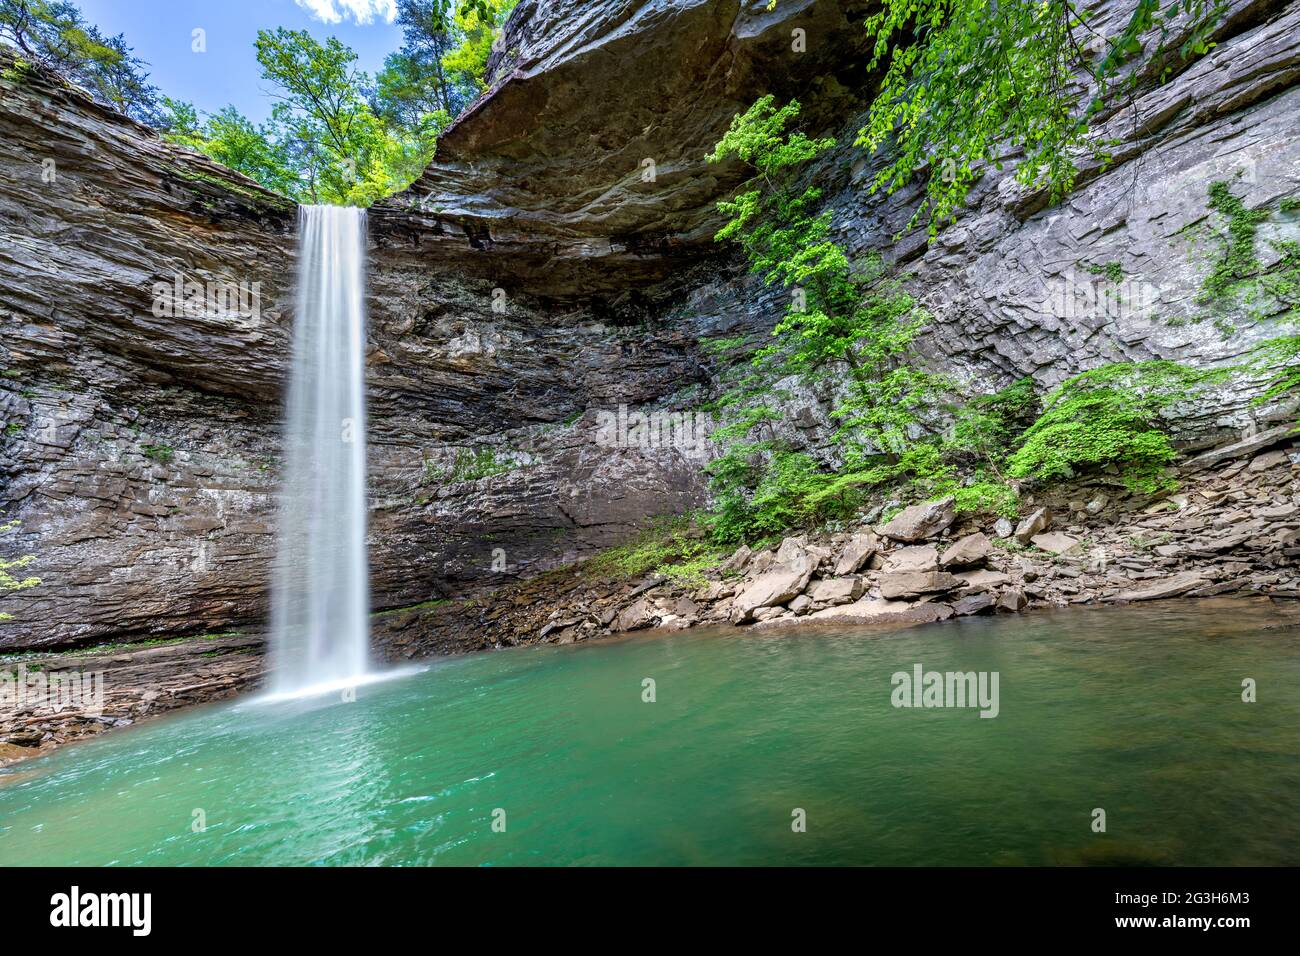 Belles chutes d'ozone dans le comté de Cumberland Tennessee est un trou de baignade pittoresque avec une cascade fraîche qui alimente la piscine. Banque D'Images